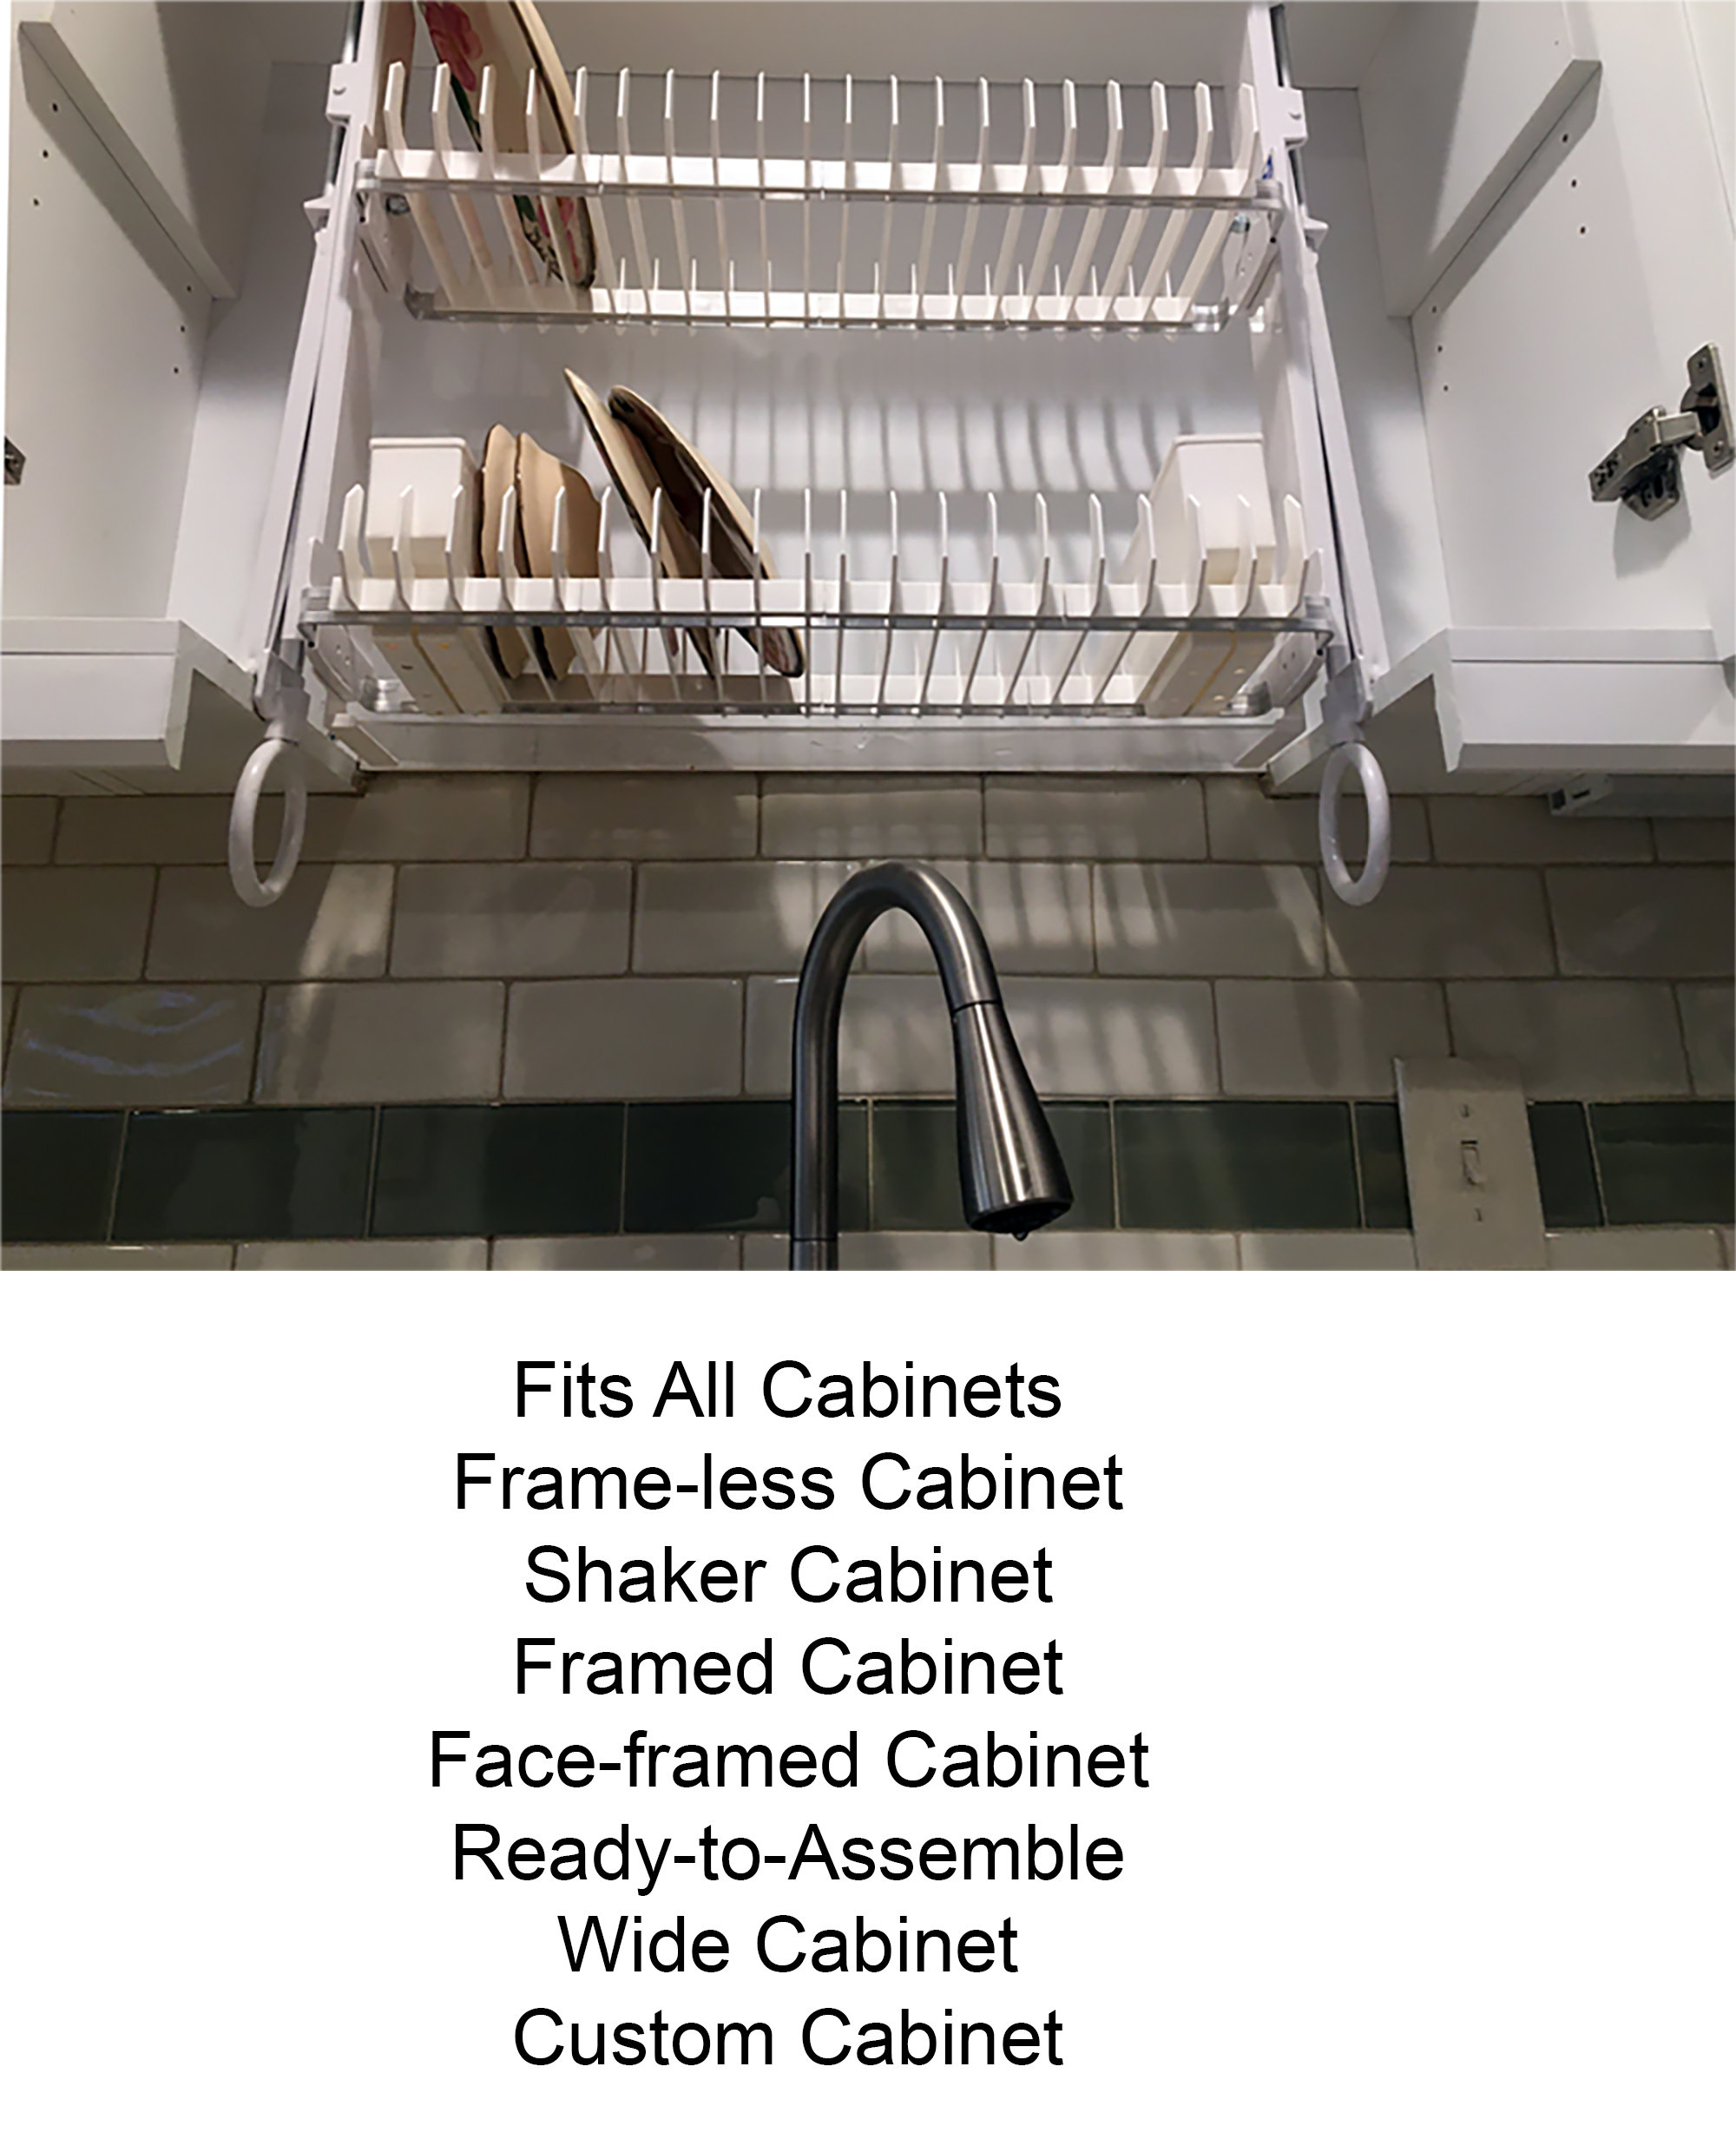 21 Finnish dish drying cabinet racks ideas